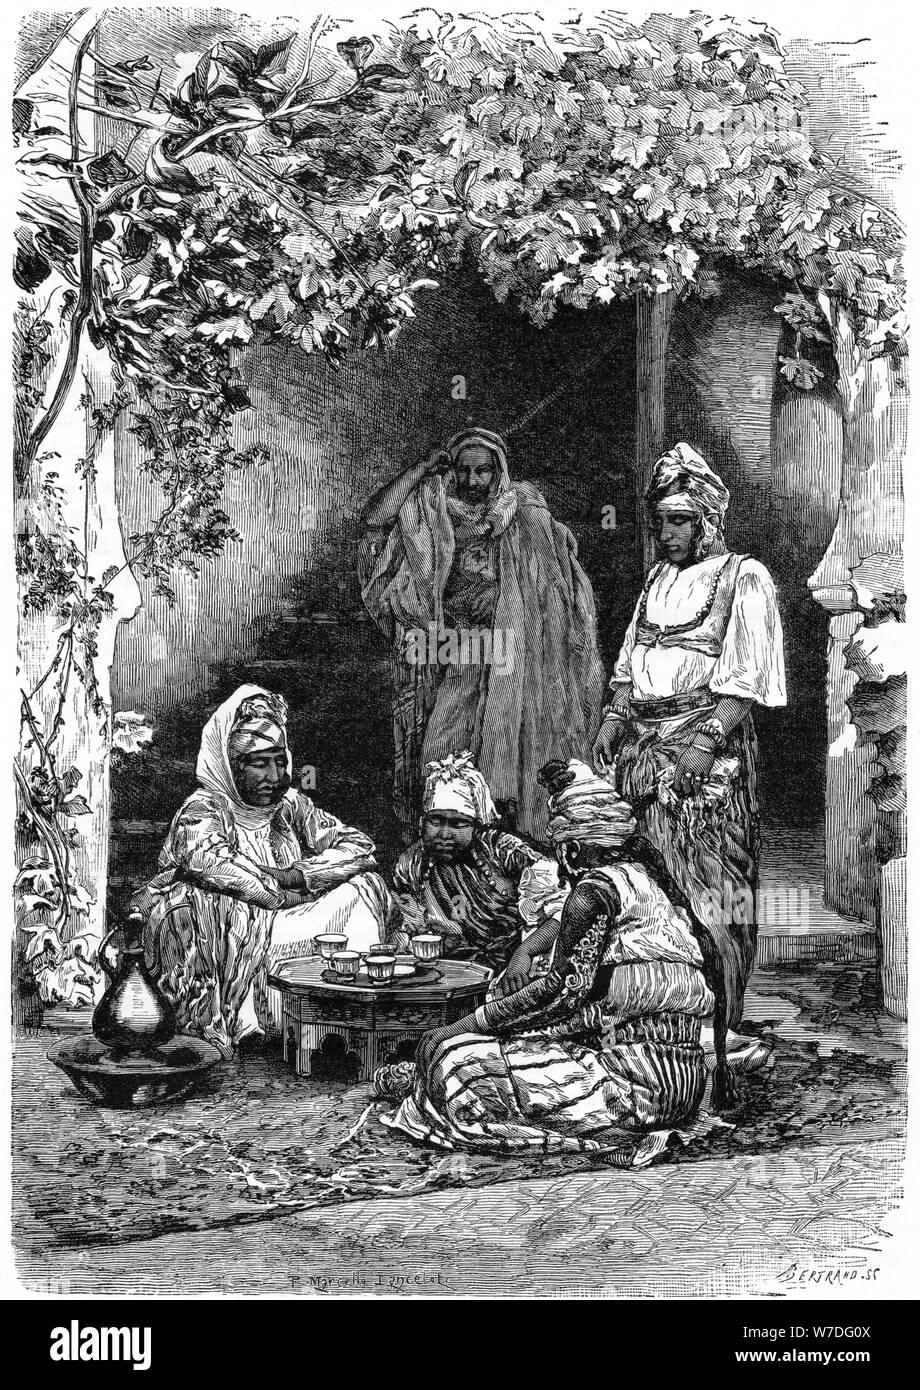 Une famille arabe de Tlemcen, Algérie, c1890. Artiste : Bertrand Banque D'Images